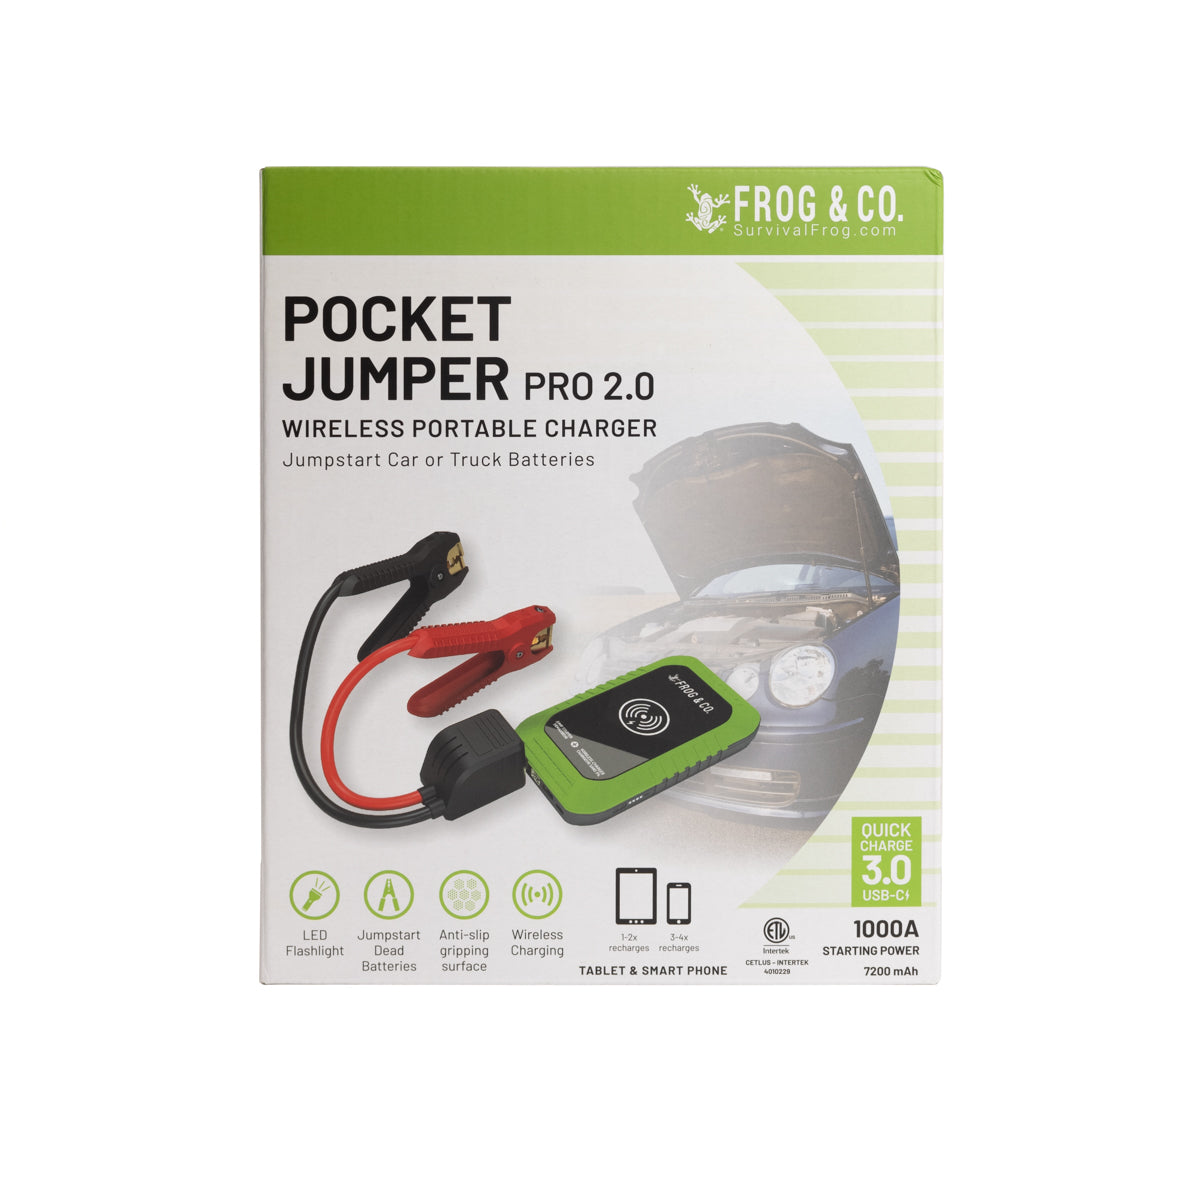 Pocket Jumper Pro 2.0